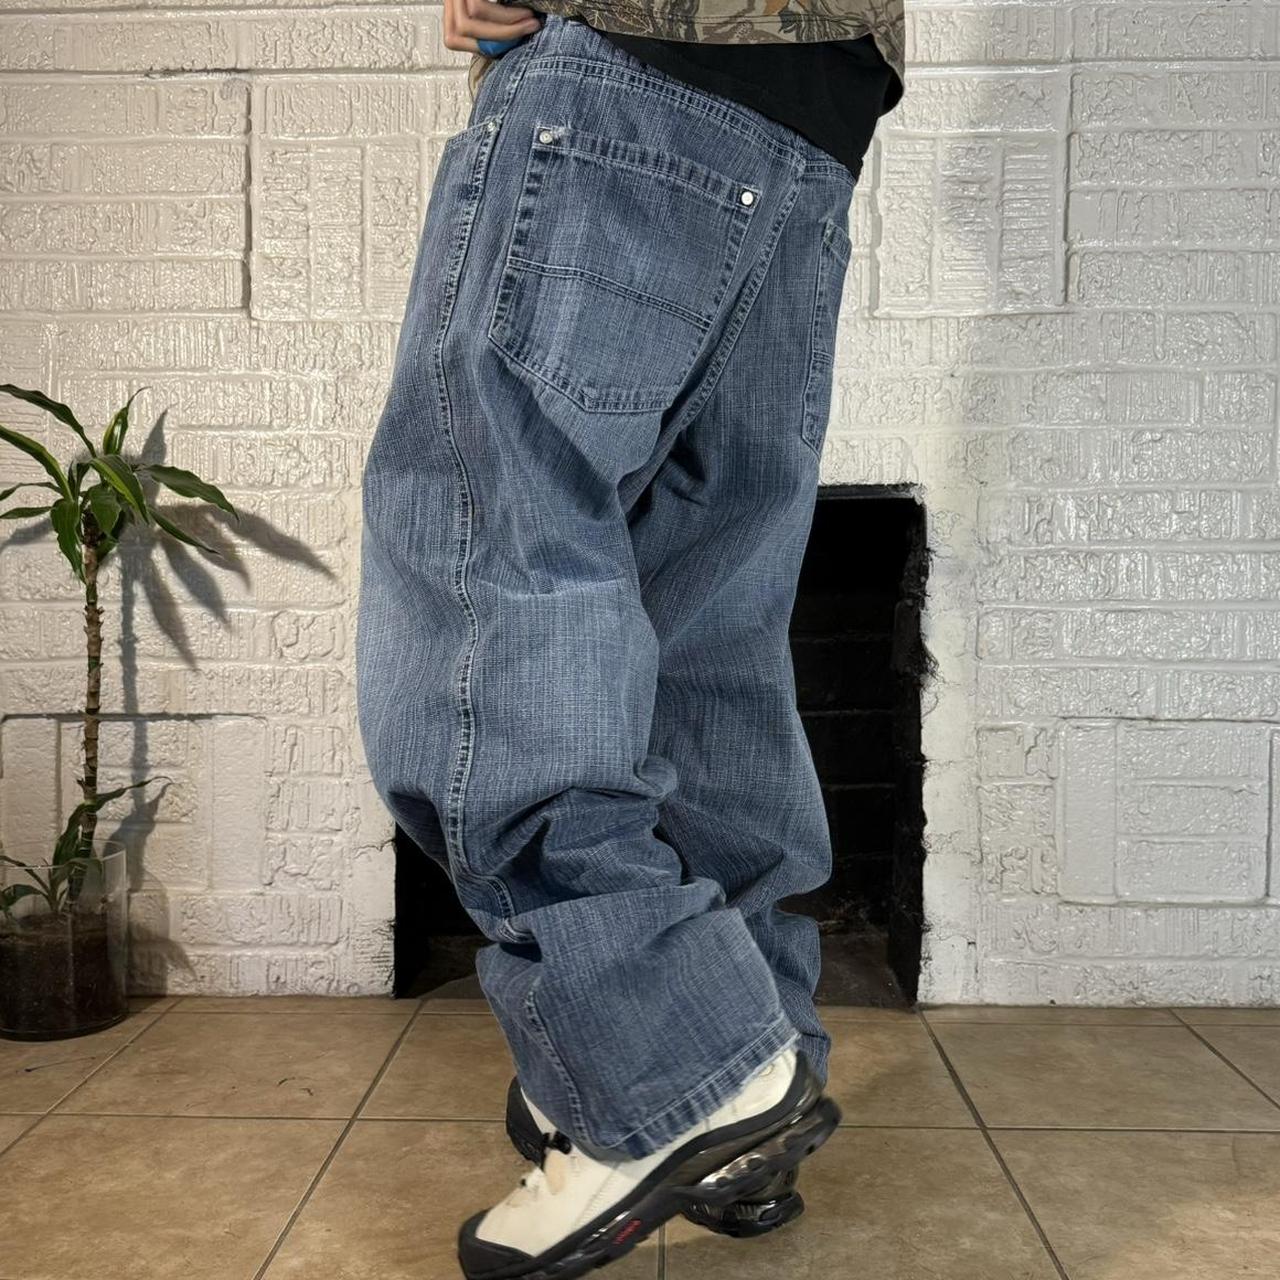 Vintage 2000s Southpole Jeans Baggy loose fit No... - Depop